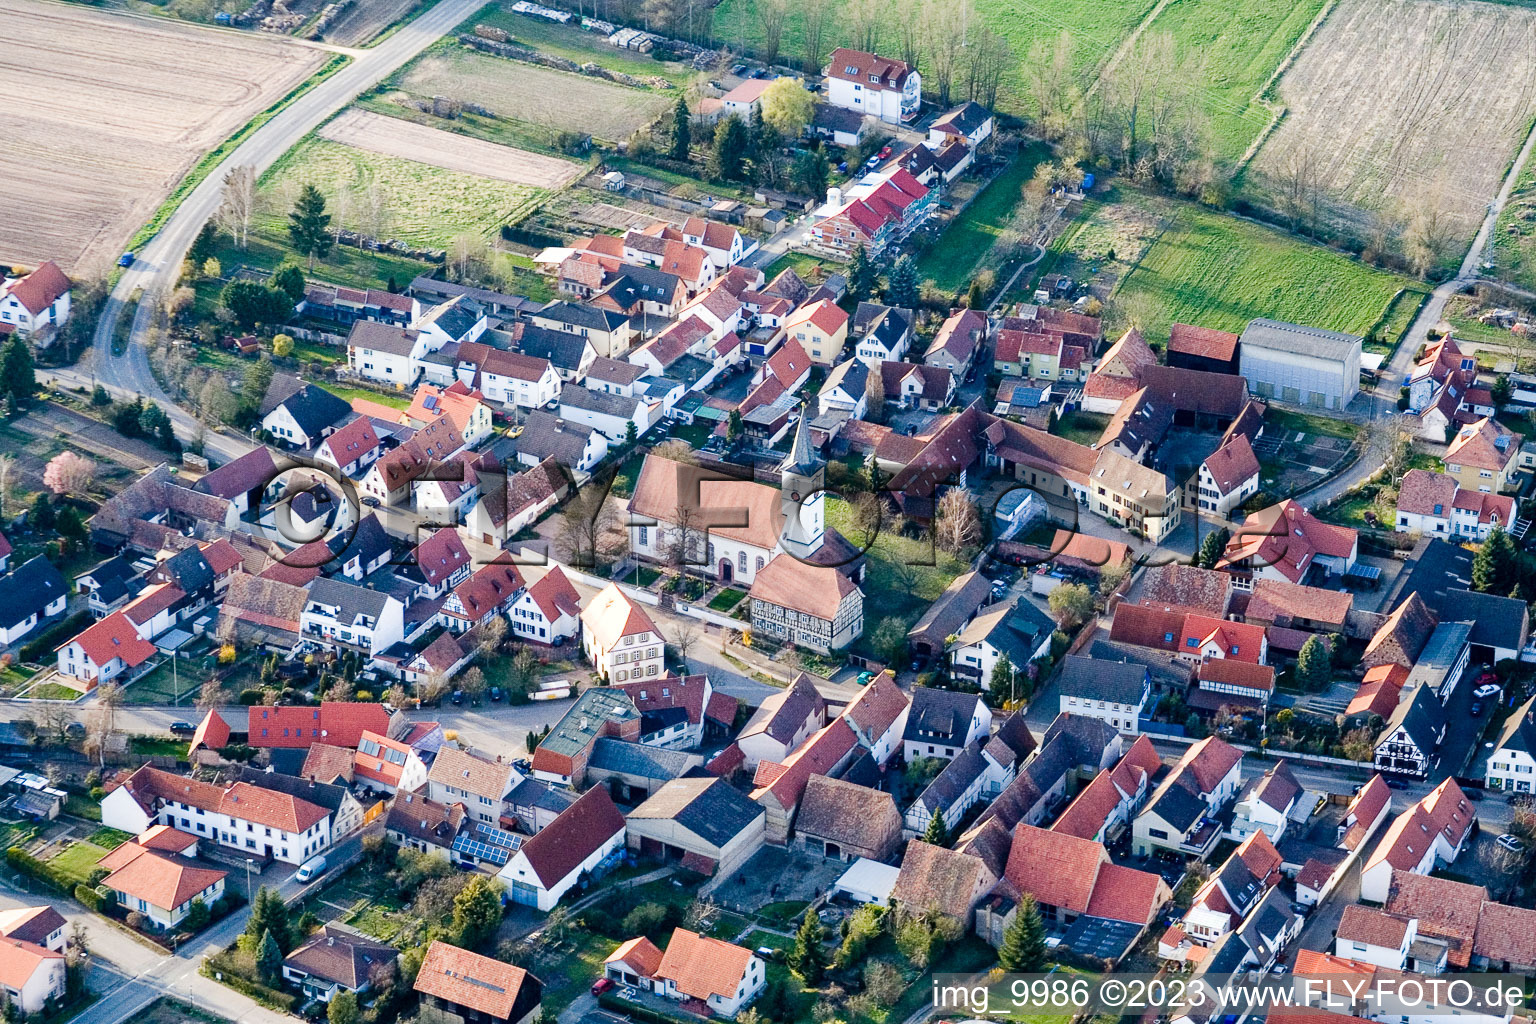 Schwegenheim im Bundesland Rheinland-Pfalz, Deutschland von der Drohne aus gesehen